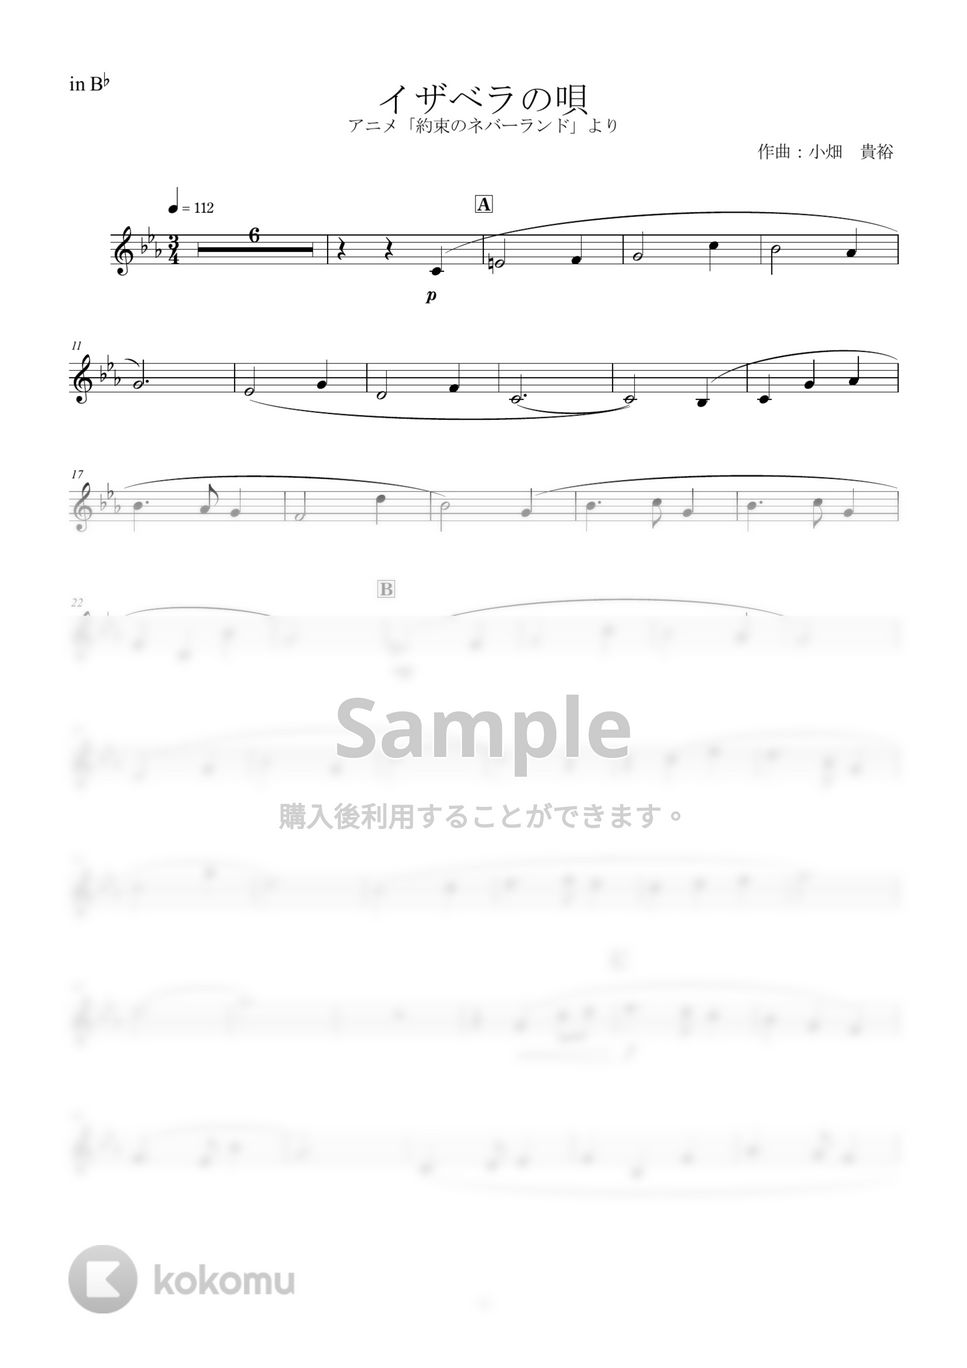 約束のネバーランド - イザベラの唄 (inB♭) by y.shiori